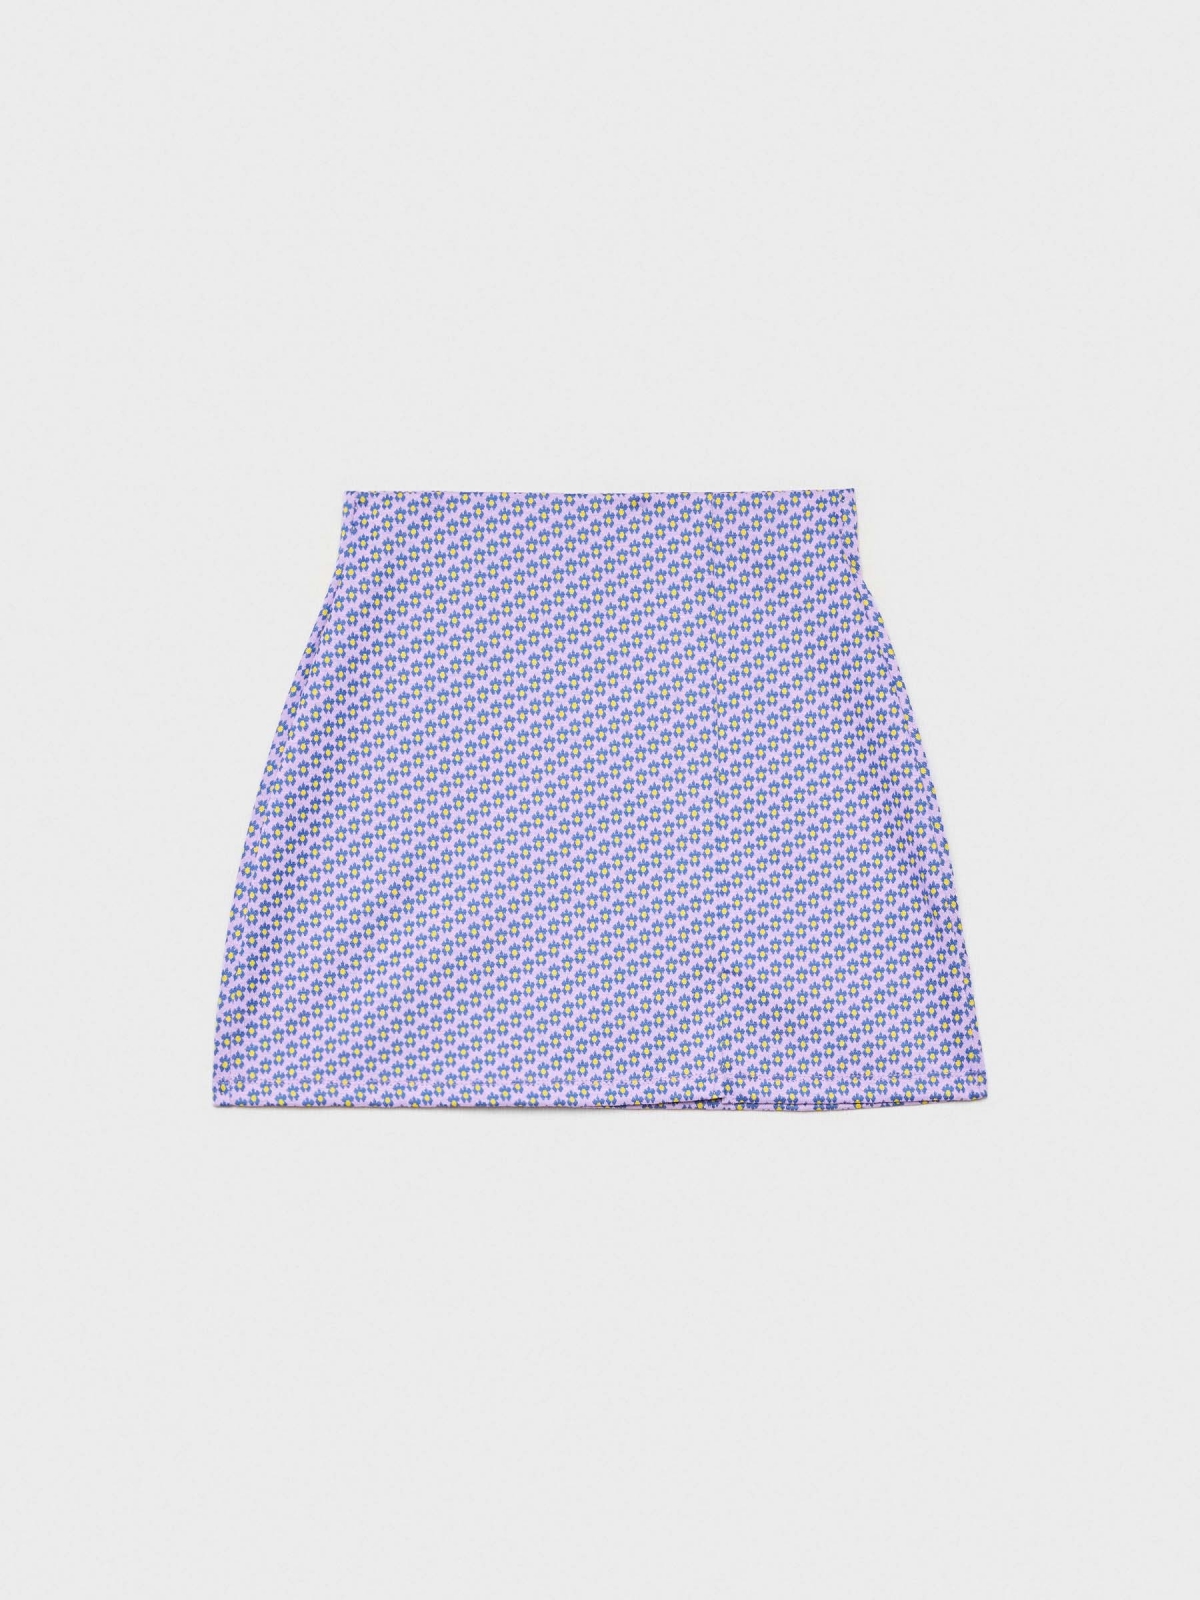  Mini jacquard skirt purple